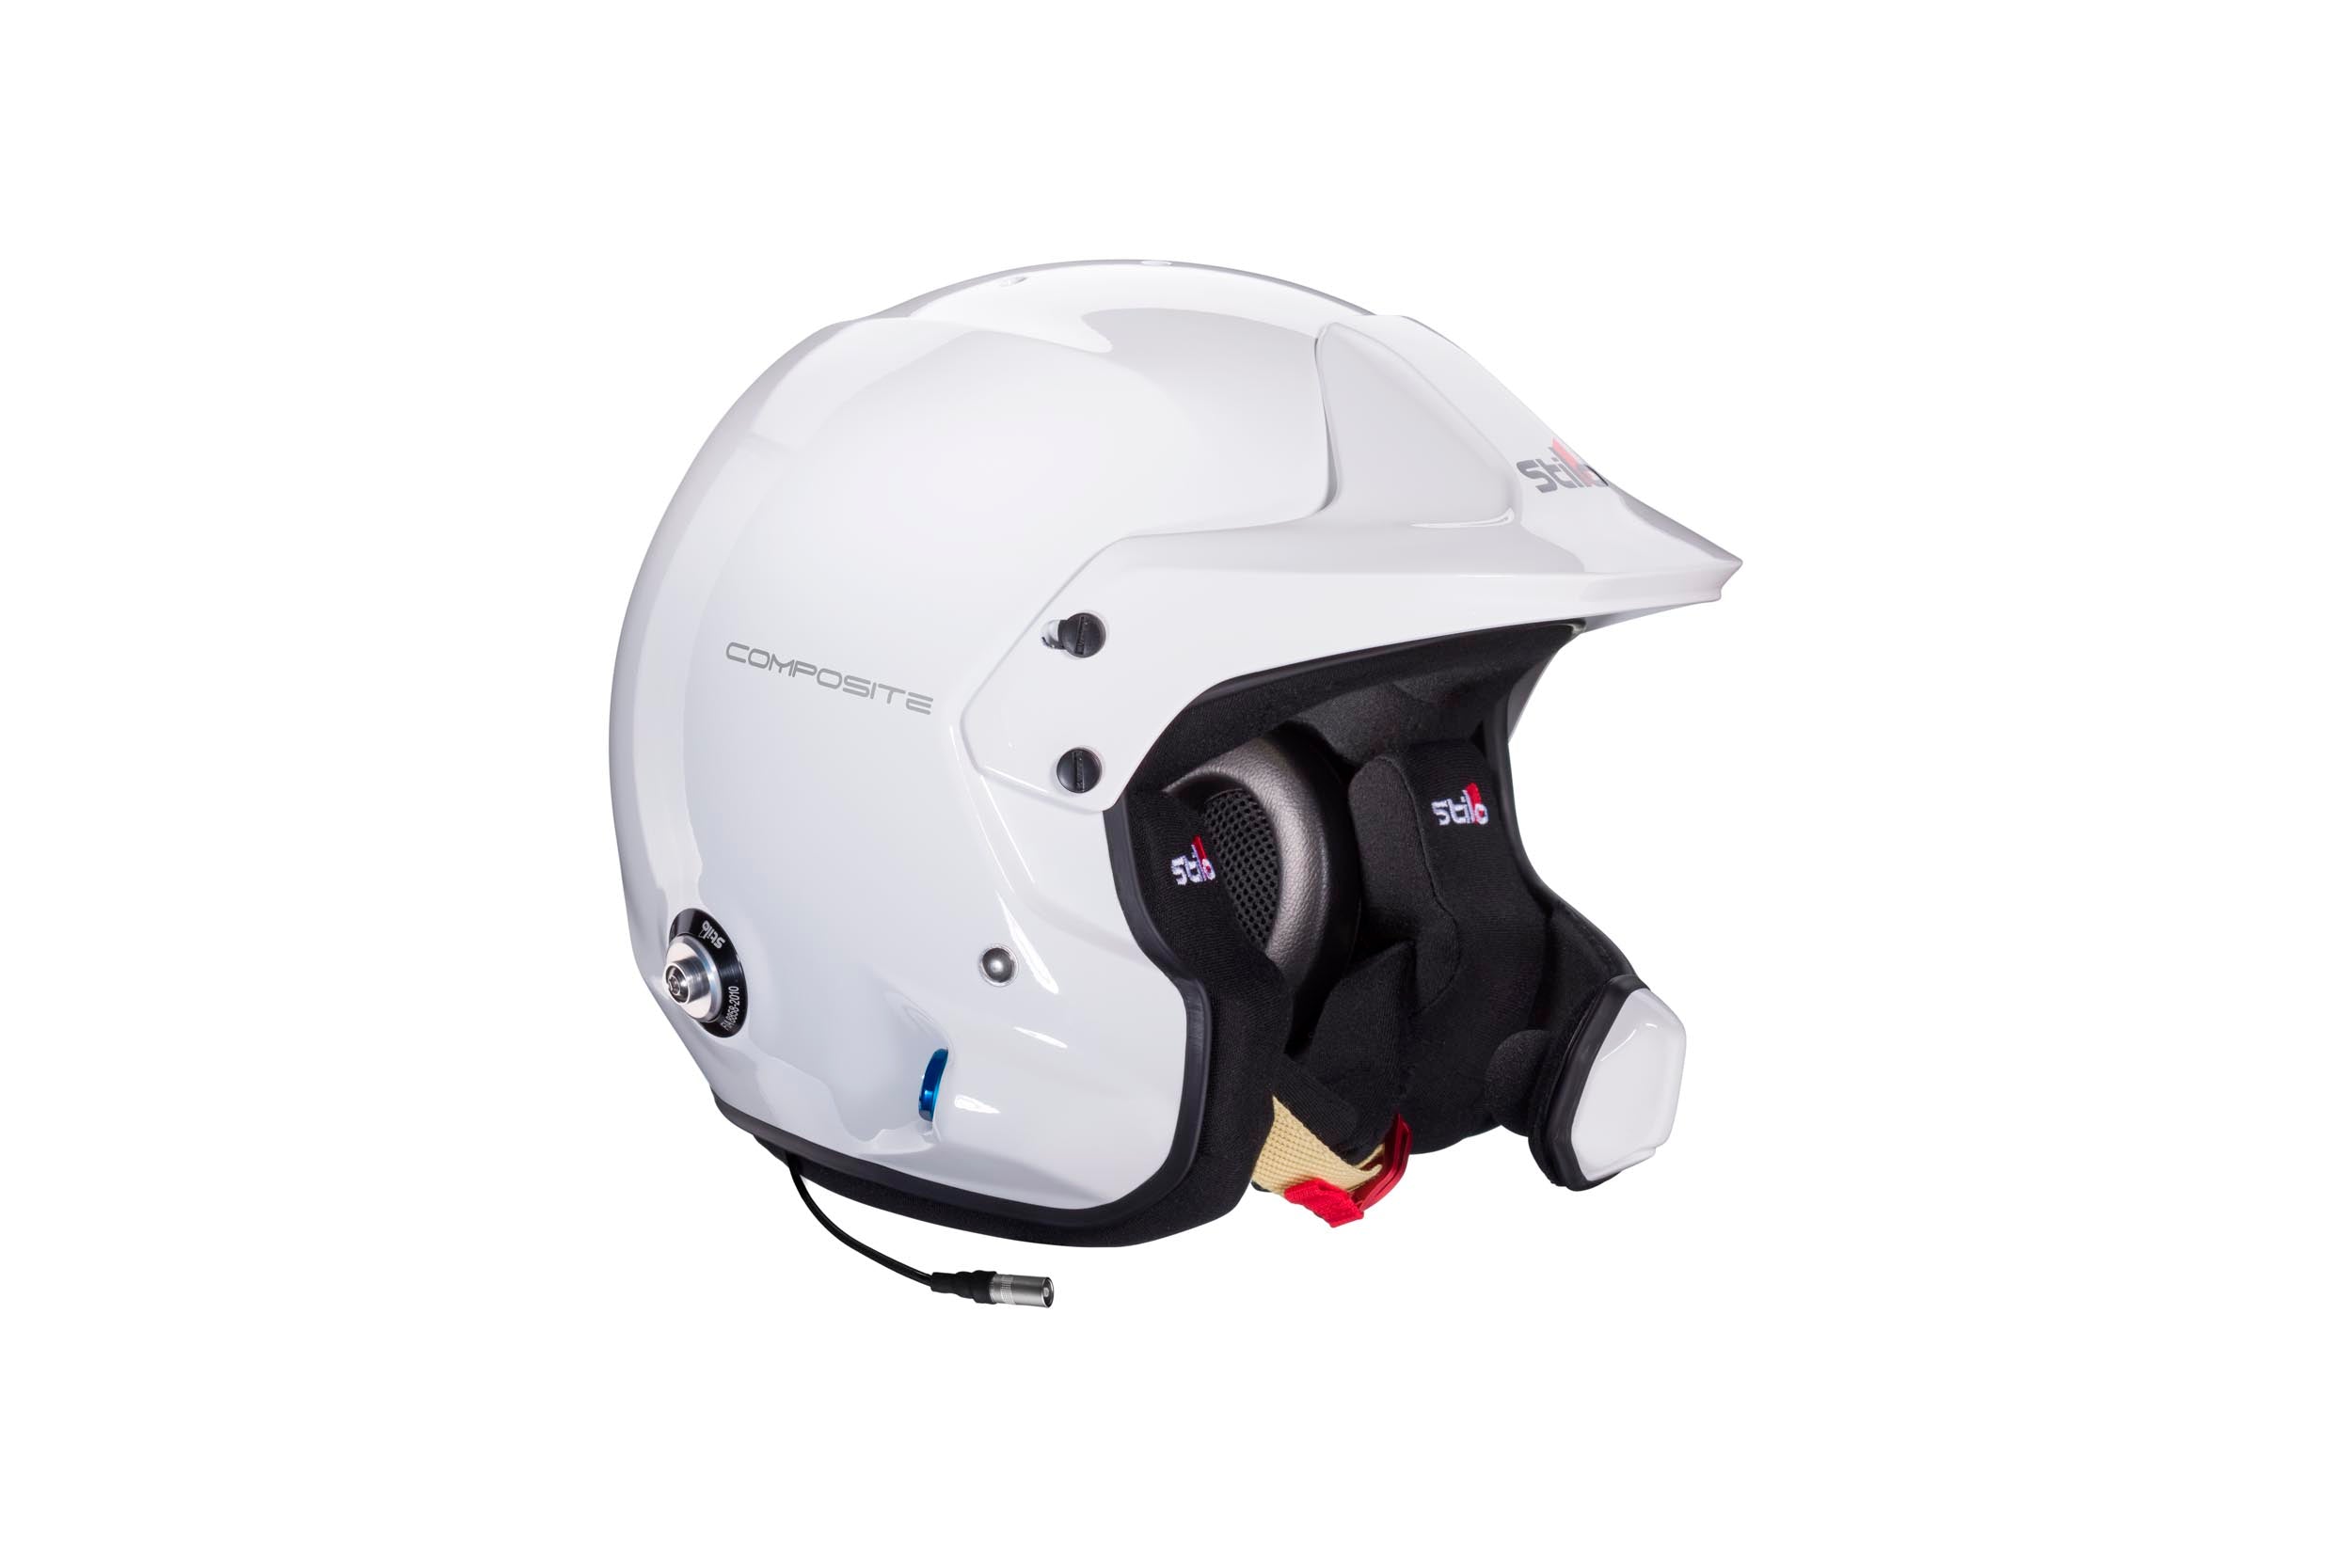 STILO AA0220CG2T540101 Venti WRC Composite Turismo Helmet, open face, Snell SA2020/FIA, white, size 54 Photo-0 